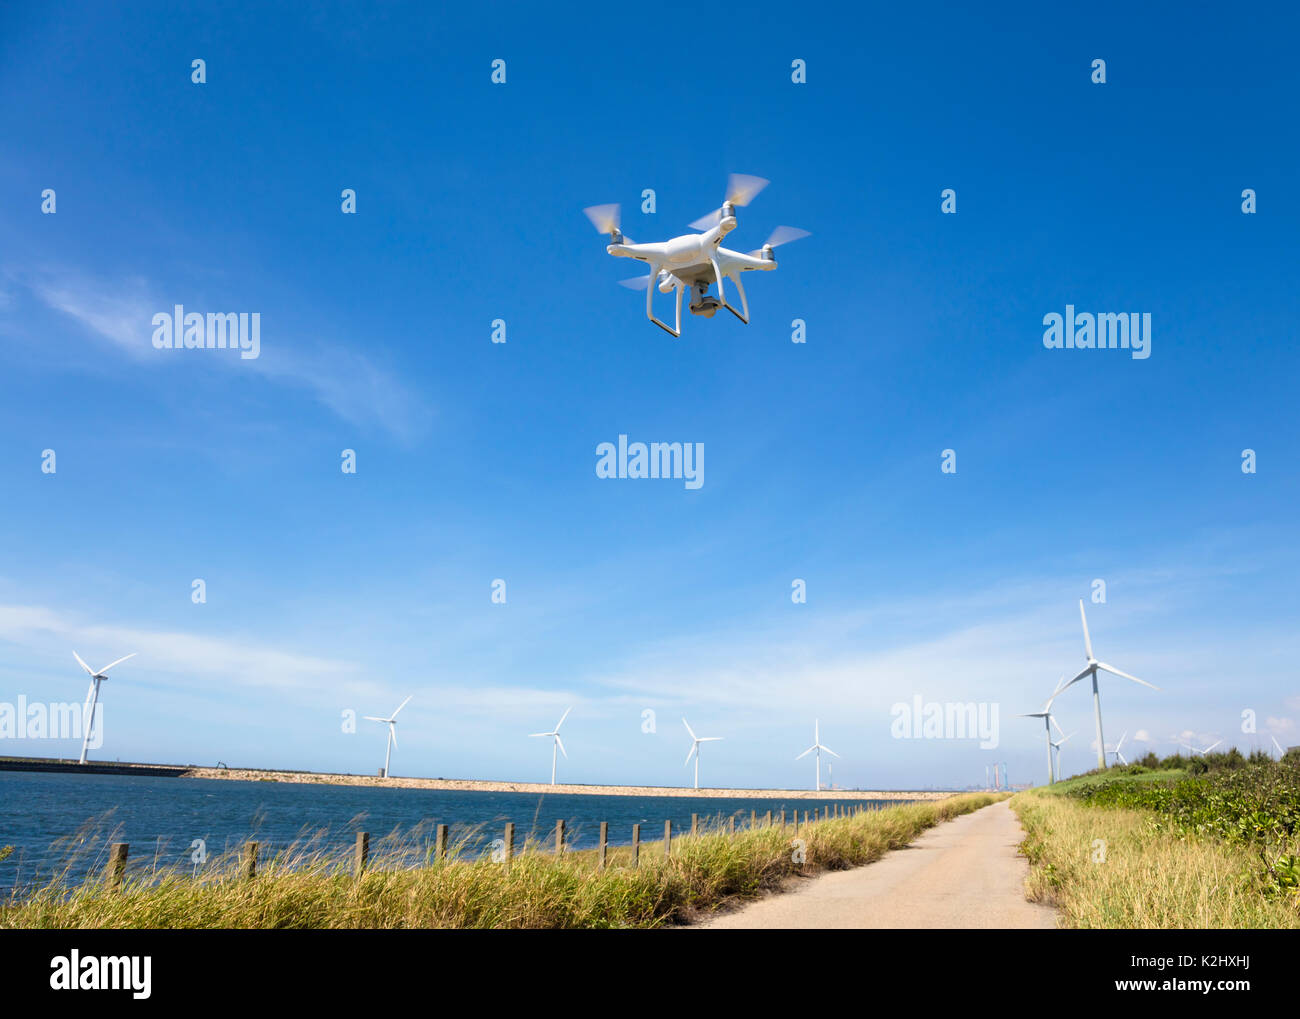 Drone survolant le ciel bleu avec wind turbine Banque D'Images